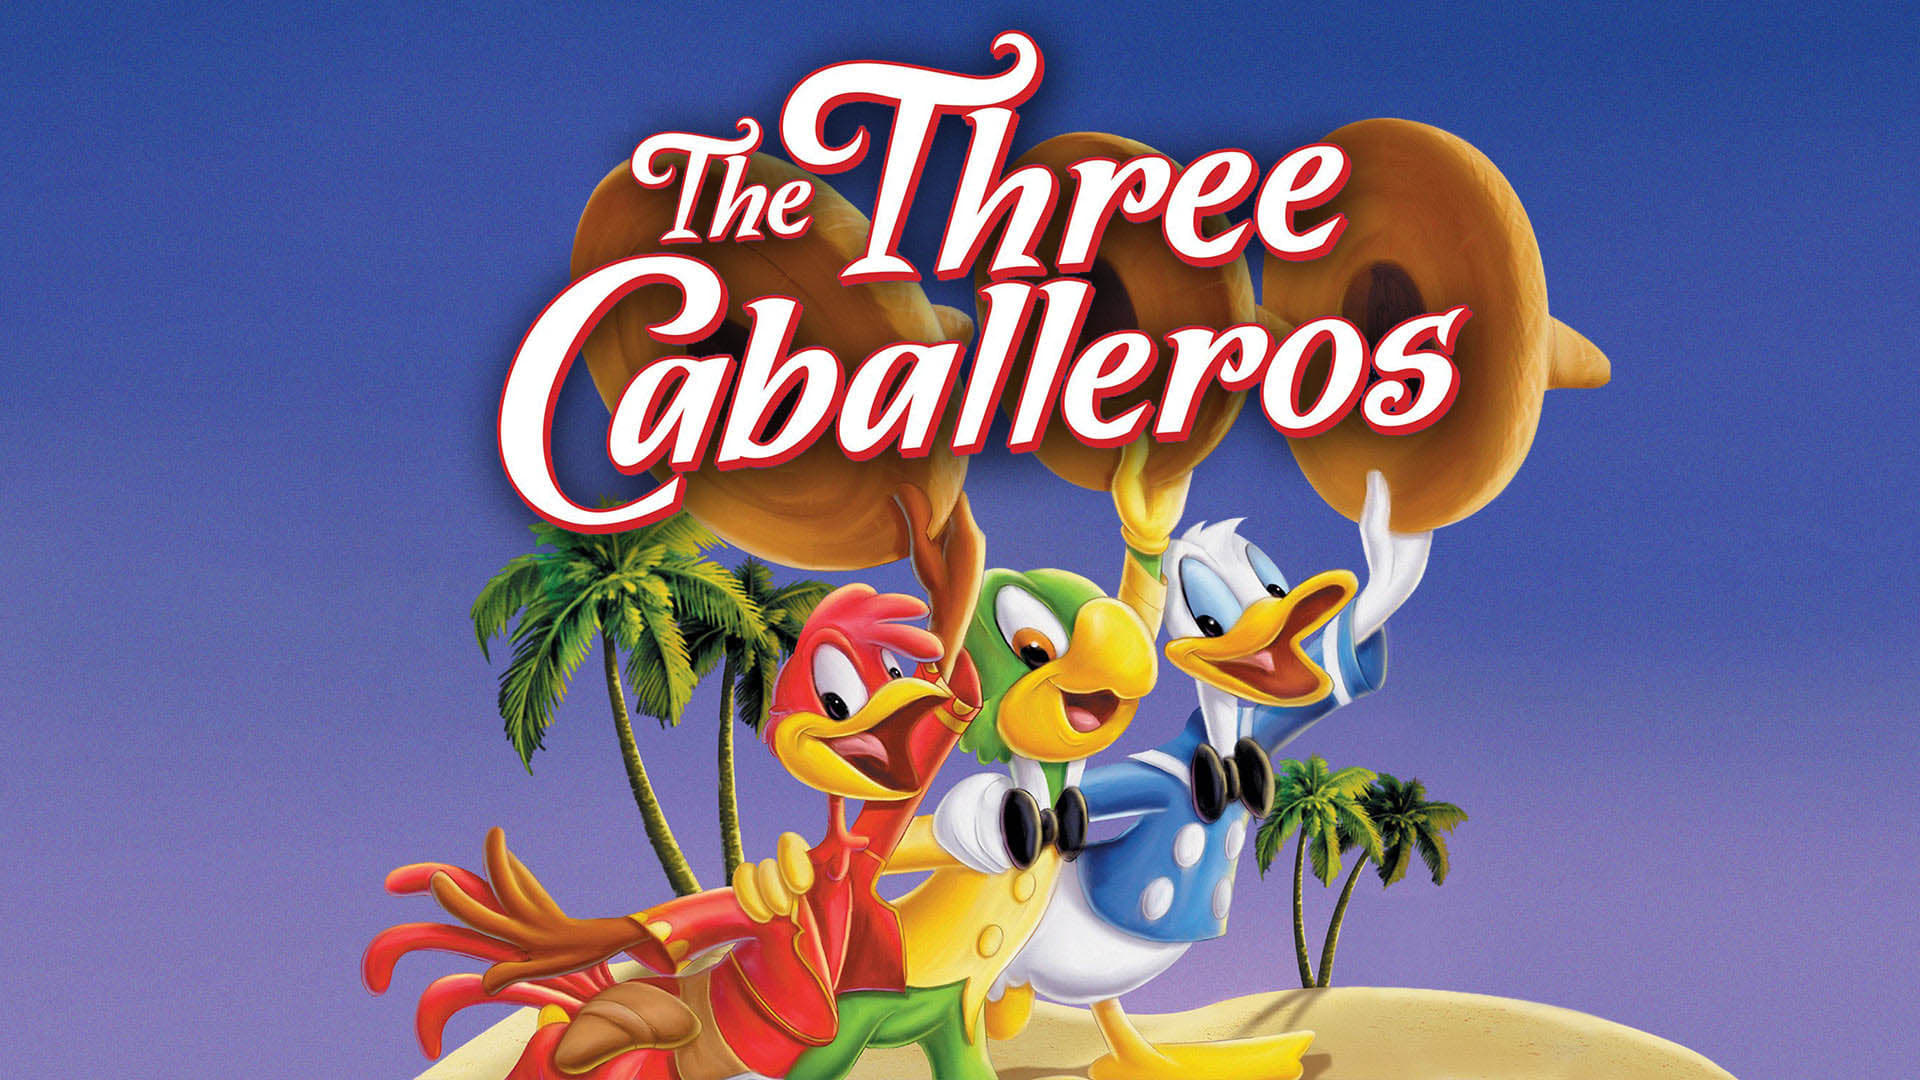 Οι Τρεις Καμπαλέρος (1944)